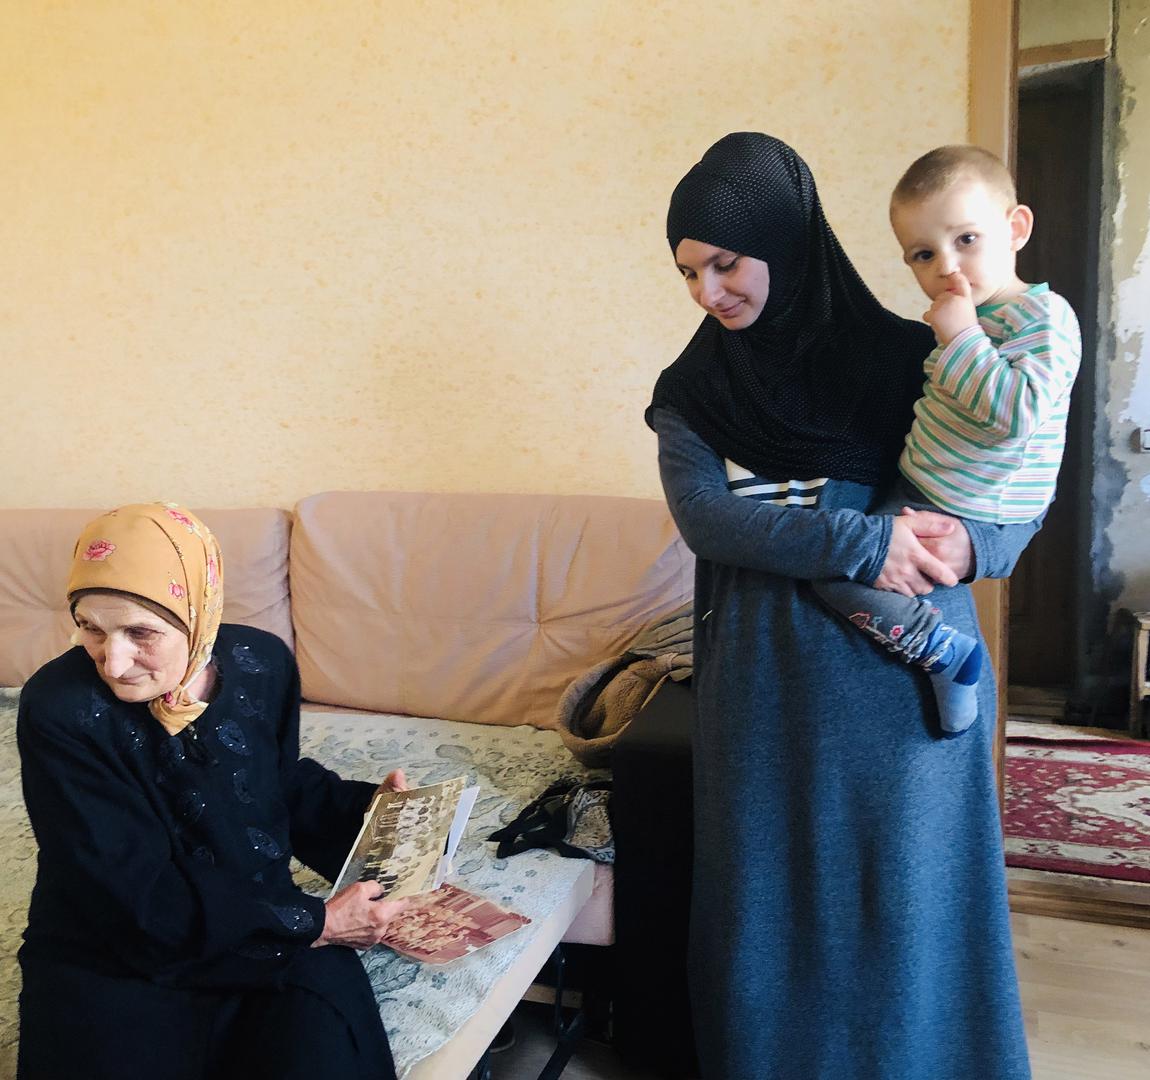 Мать, жена и сын Руслана Сулейманова, одного из крымскотатарских активистов, арестованных в Крыму 27 марта 2019 года по политически мотивированным обвинениям в преступлении террористической направленности.